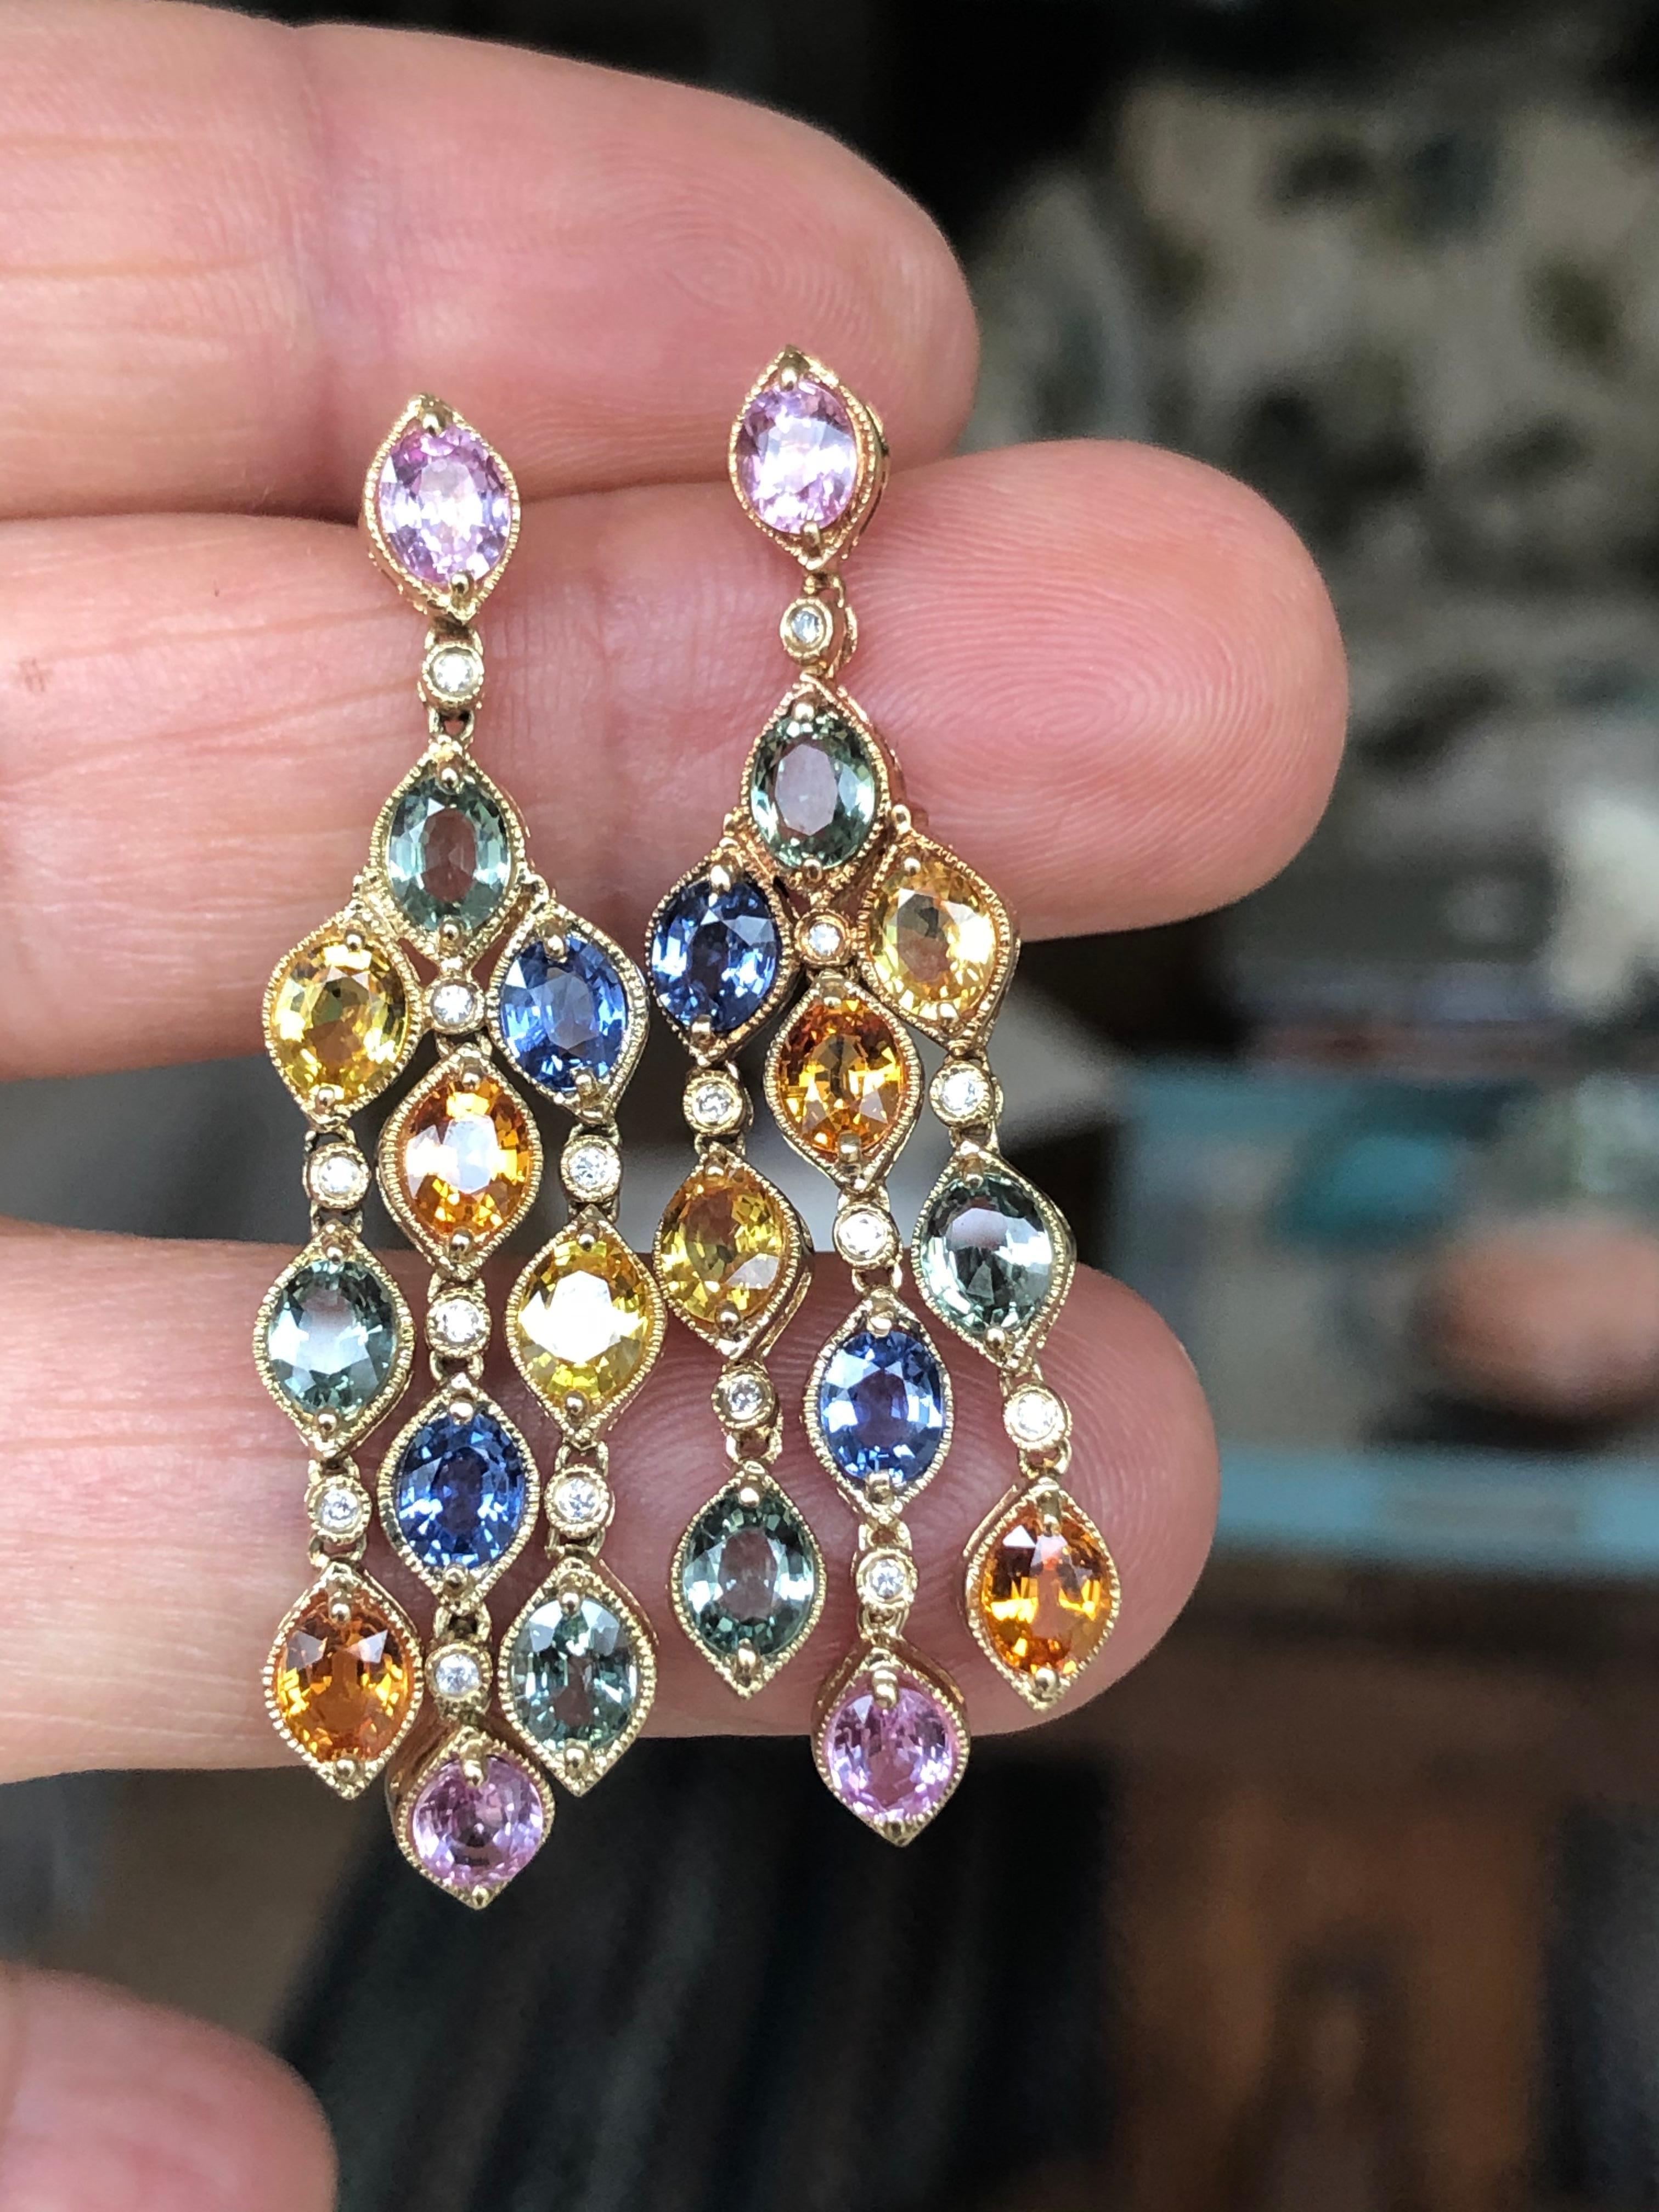 Oval Cut 14.50 Carat Sapphire Diamonds Chandelier Earrings Pendant Set 14 Karat